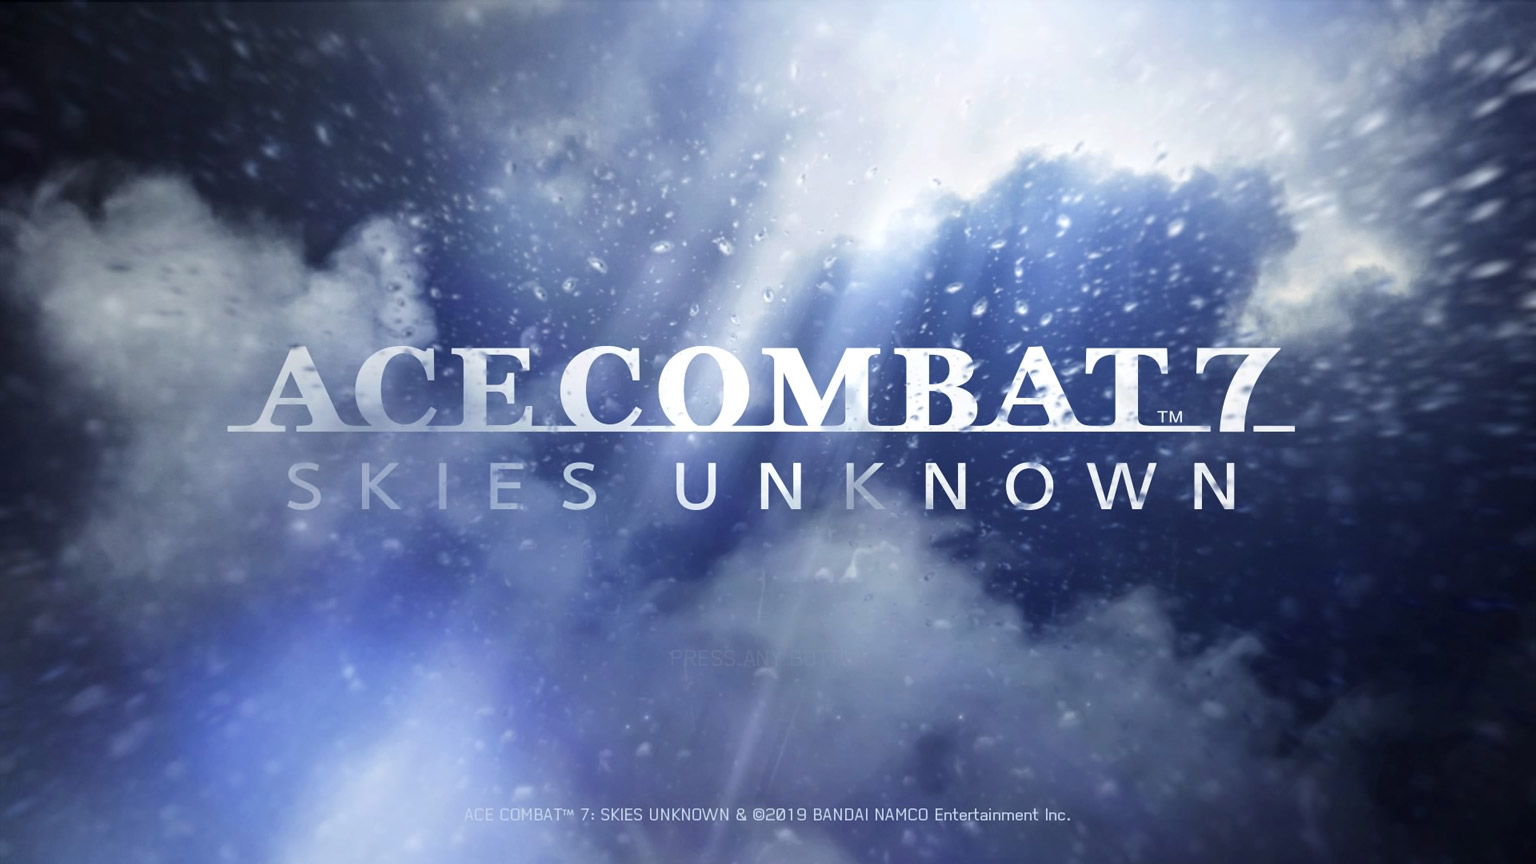 Ace Combat 7: آسمان ناشناخته بیش از 200،000 نسخه در ژاپن می فروشد ، و هنوز فروش ادامه دارد.